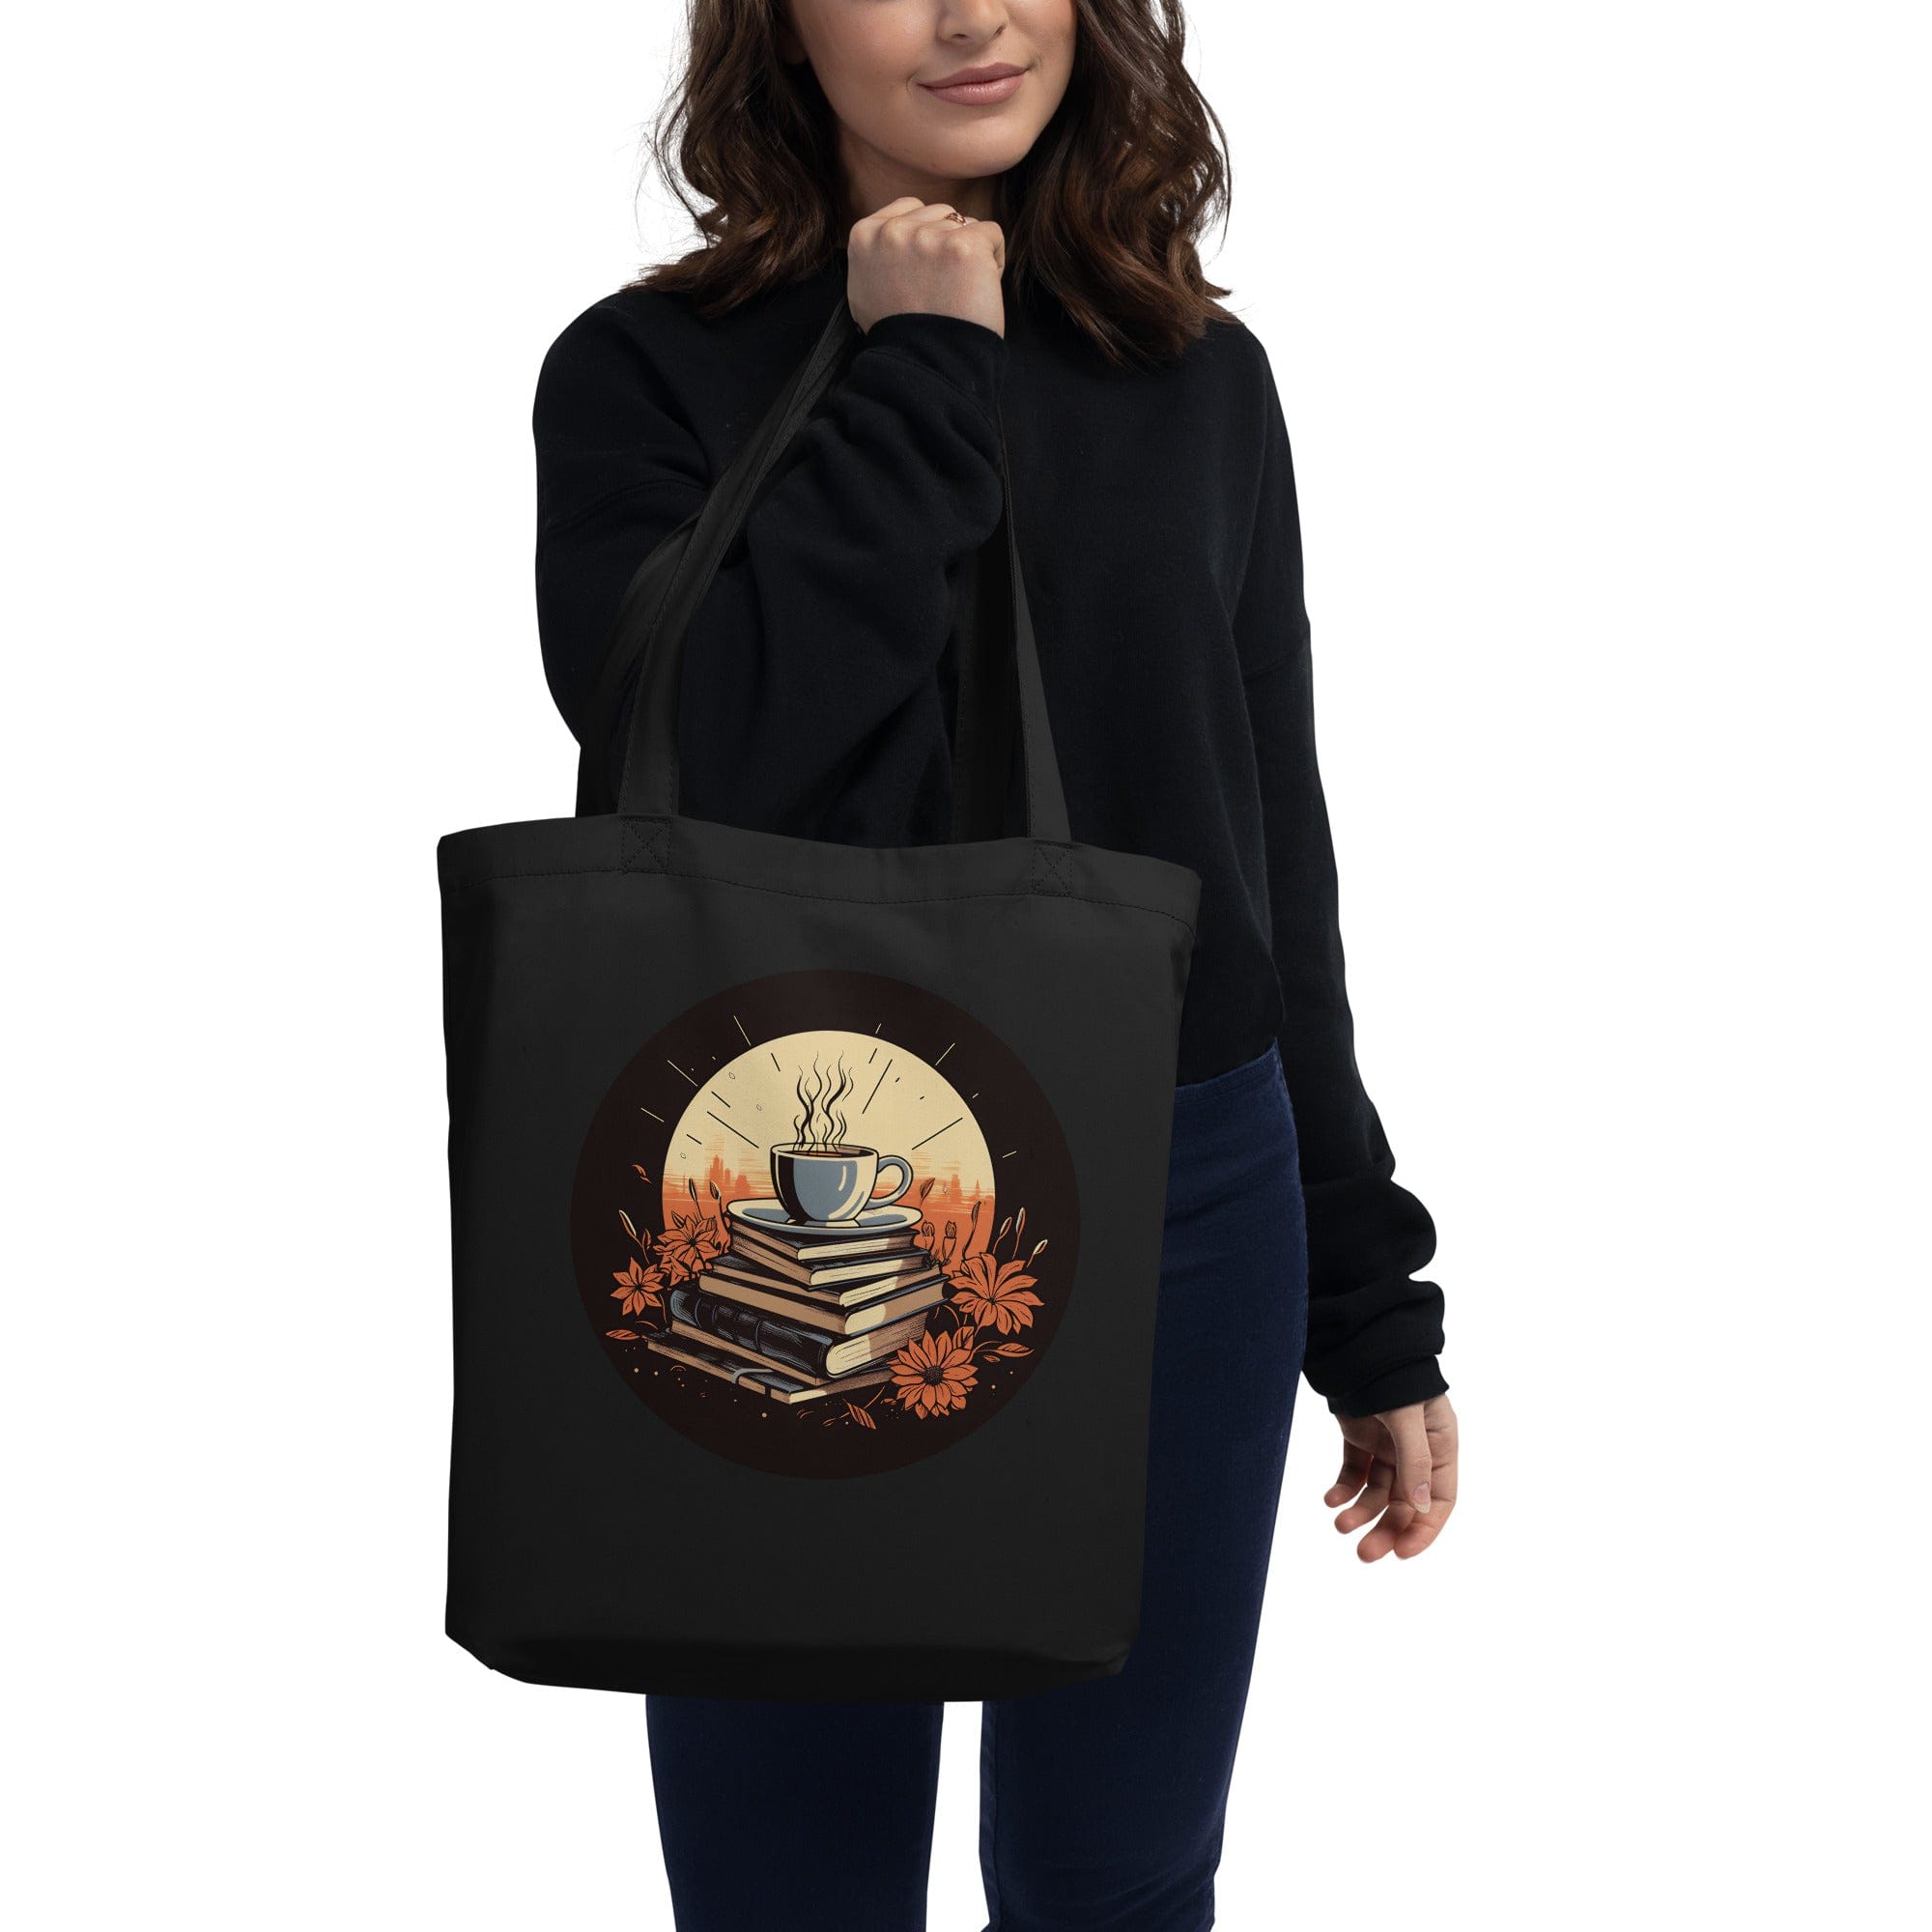 Coffee, Books, & Sunrise - Eco Tote Bag